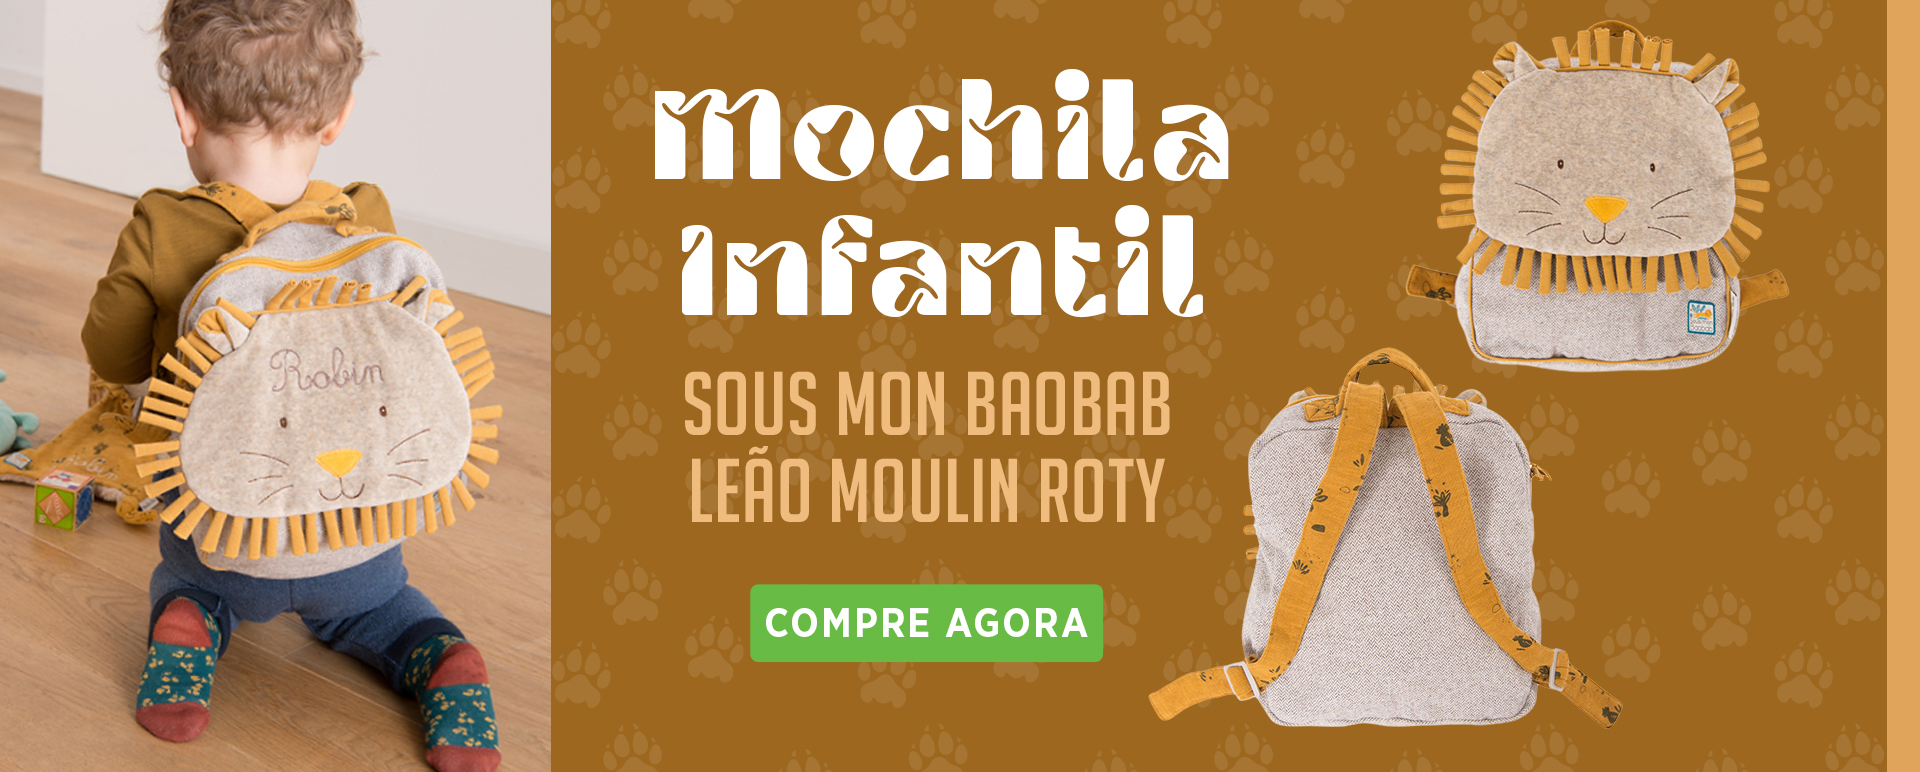 Mochila Infantil Moulin Roty